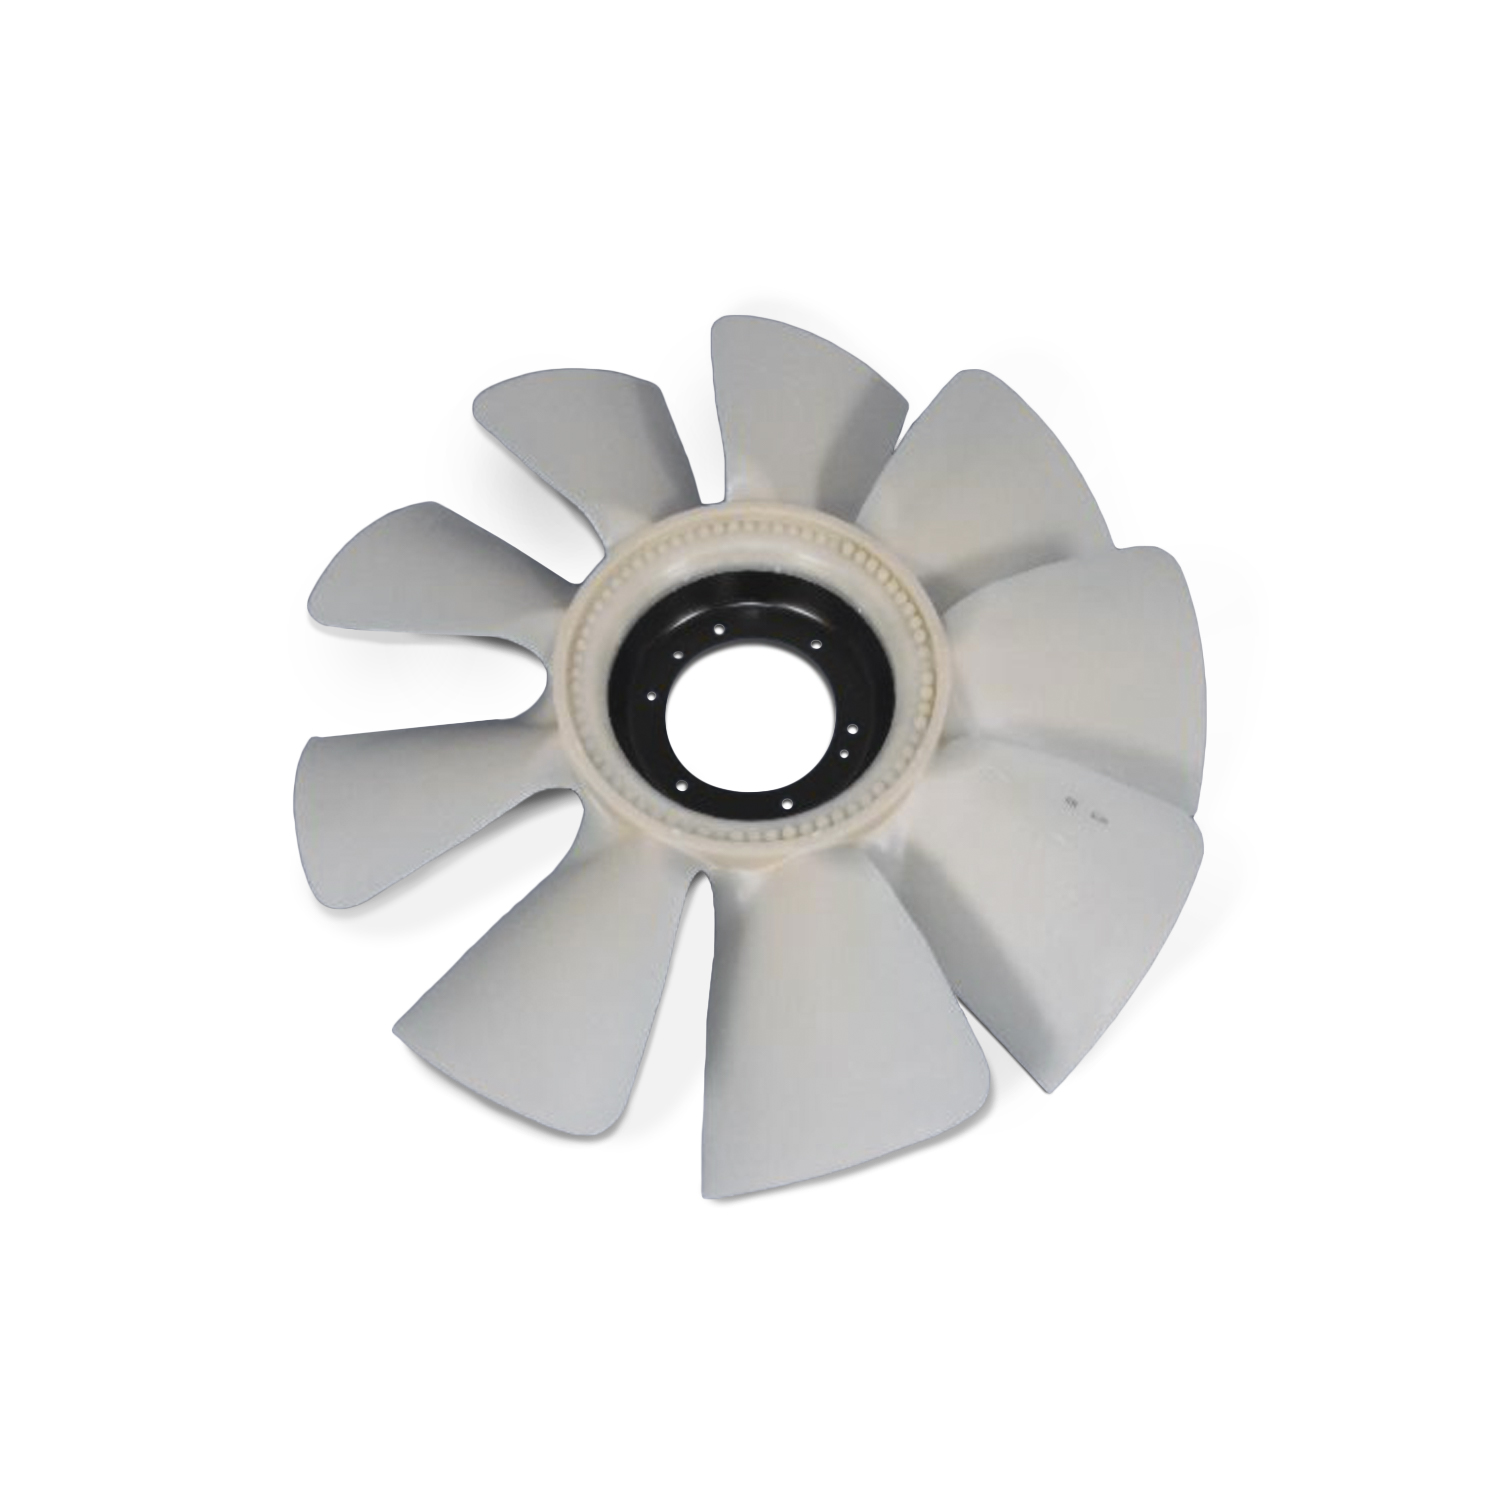 MOPAR PARTS - Engine Cooling Fan - MOP 52028878AB